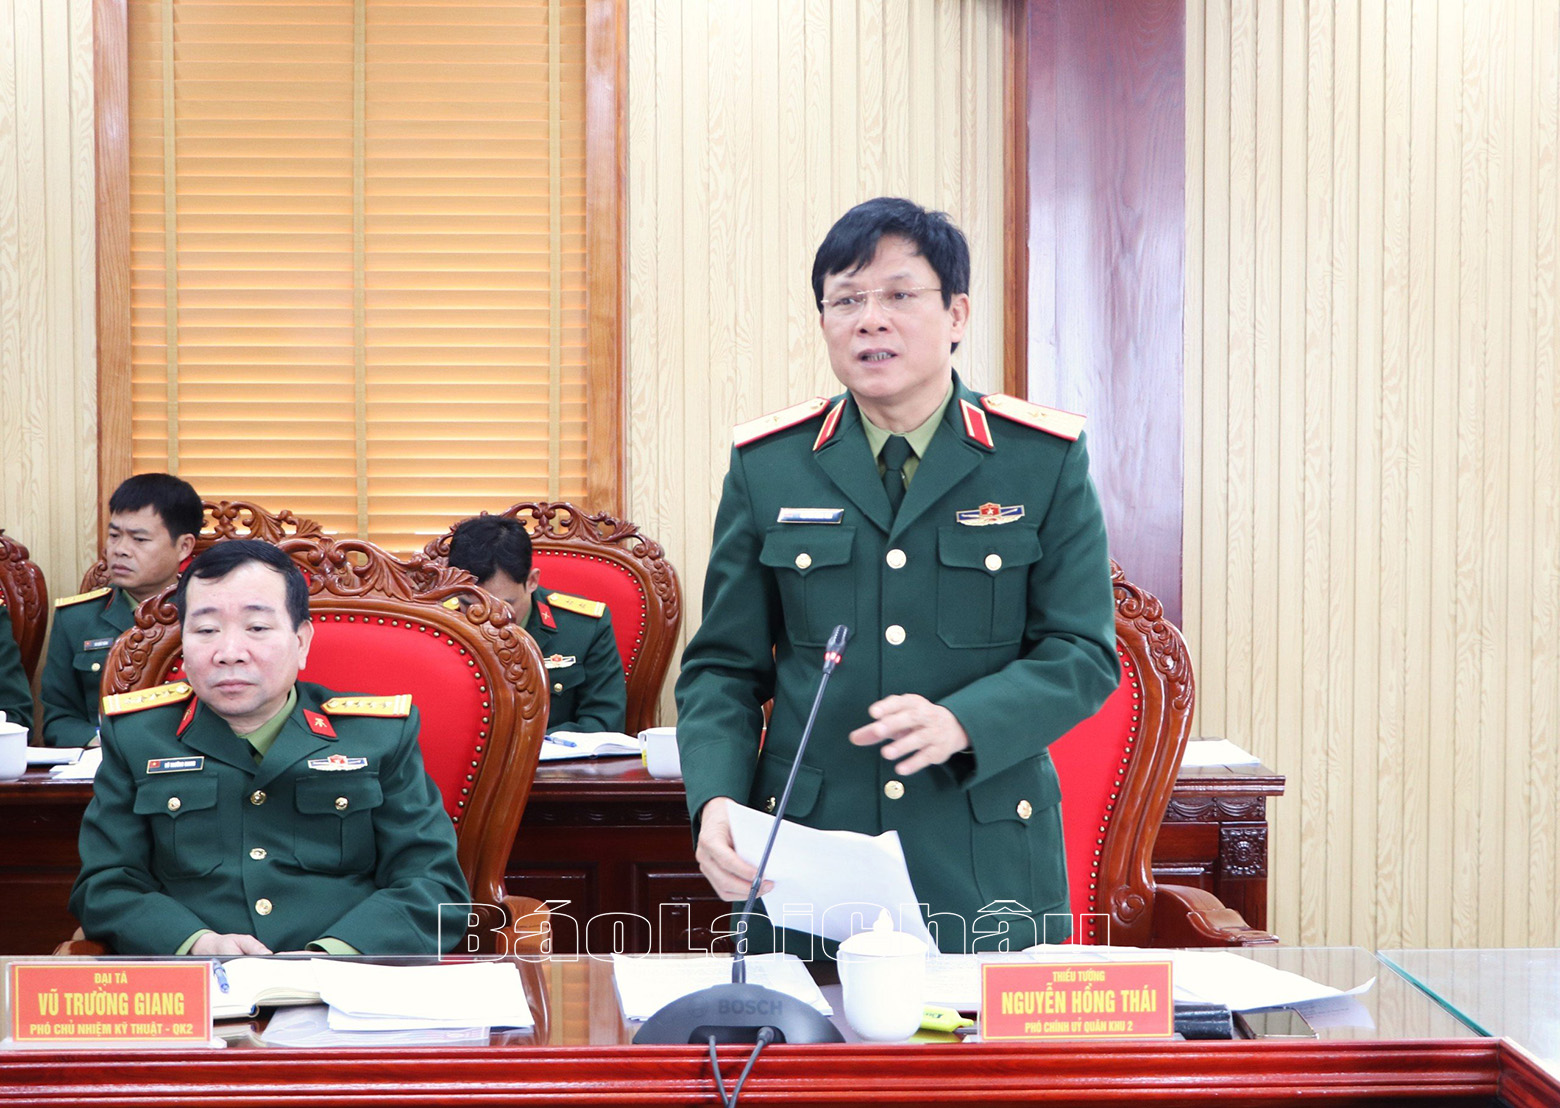 Thiếu tướng Nguyễn Hồng Thái - Ủy viên Ban Thường vụ, Phó Chính ủy Quân khu 2  phát biểu chỉ đạo hội nghị.